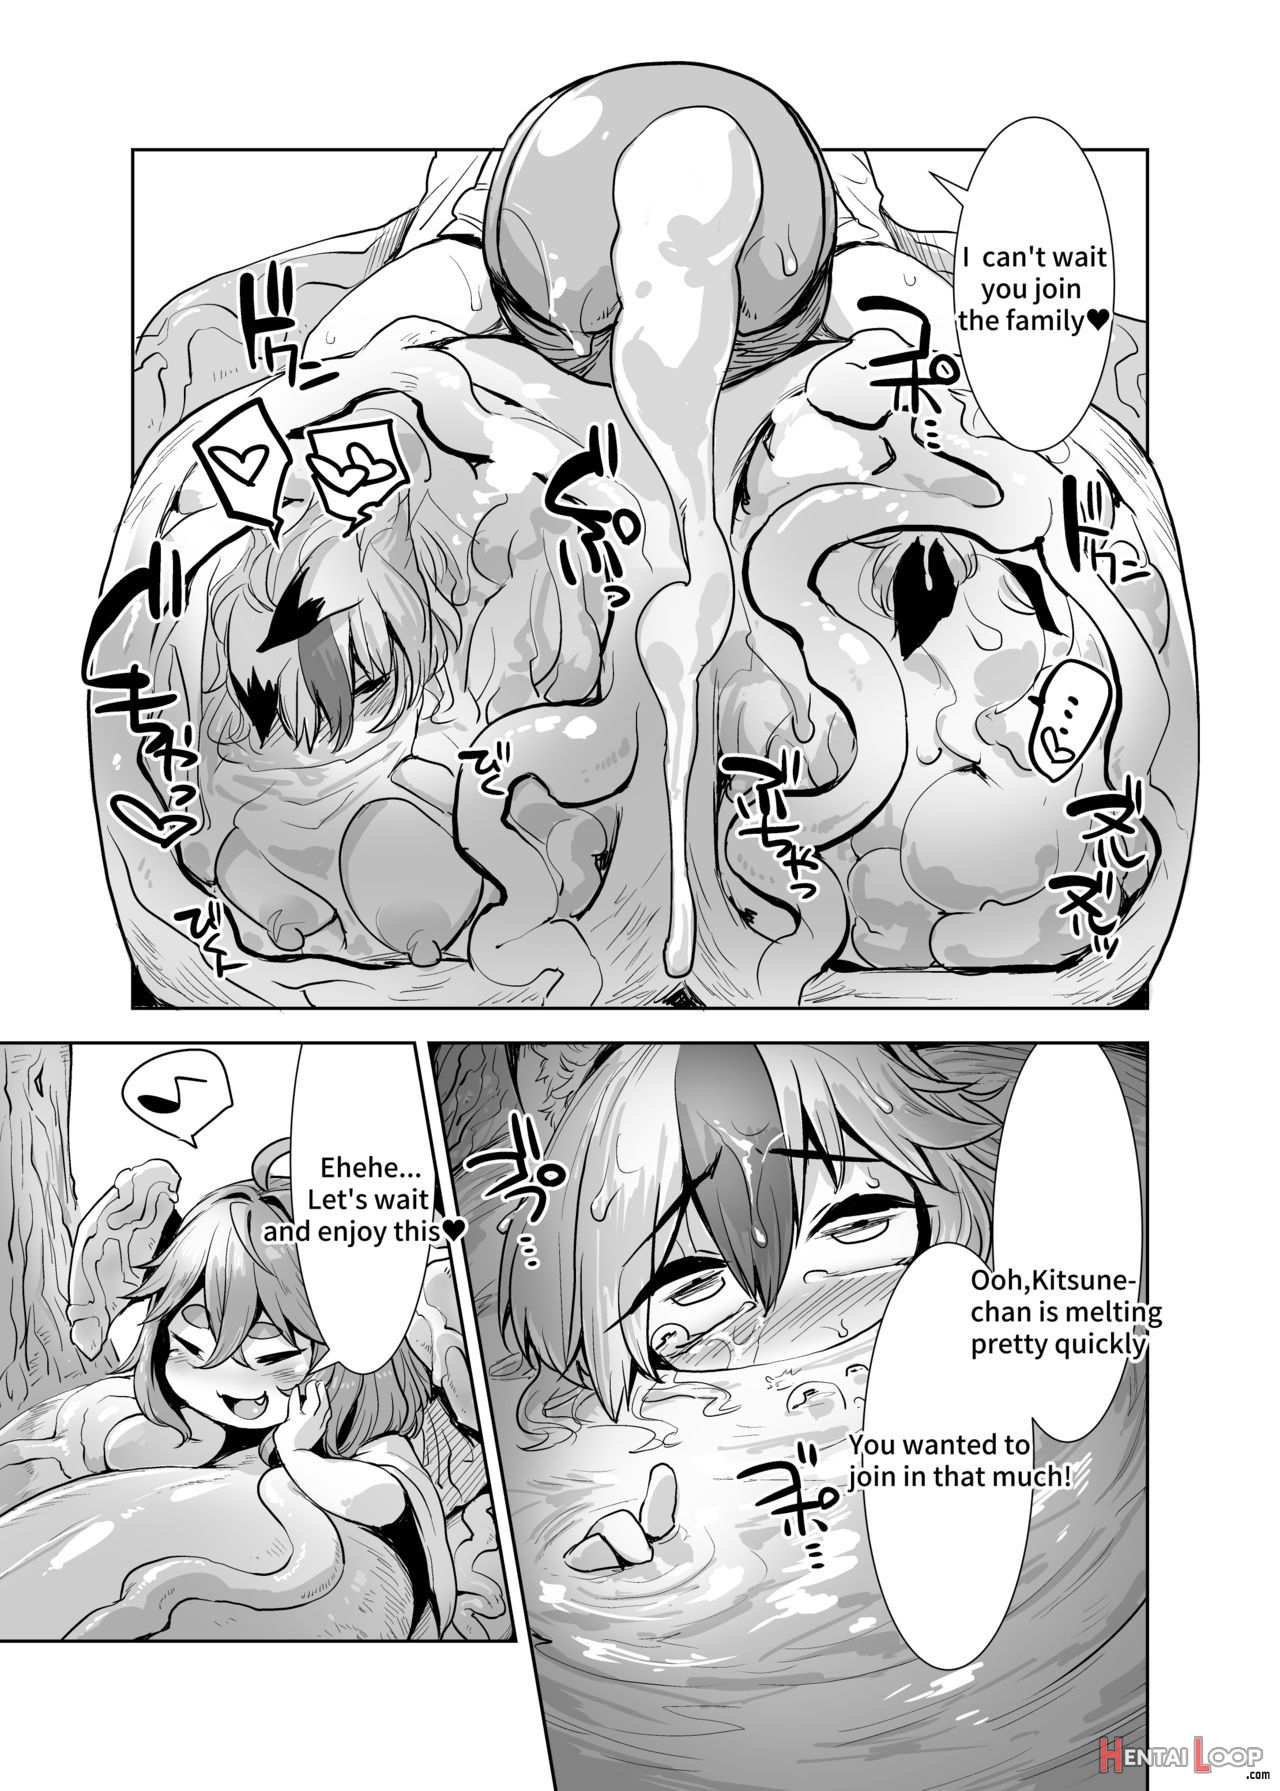 Yappari Uchinoko Wa Kawaii Na page 5